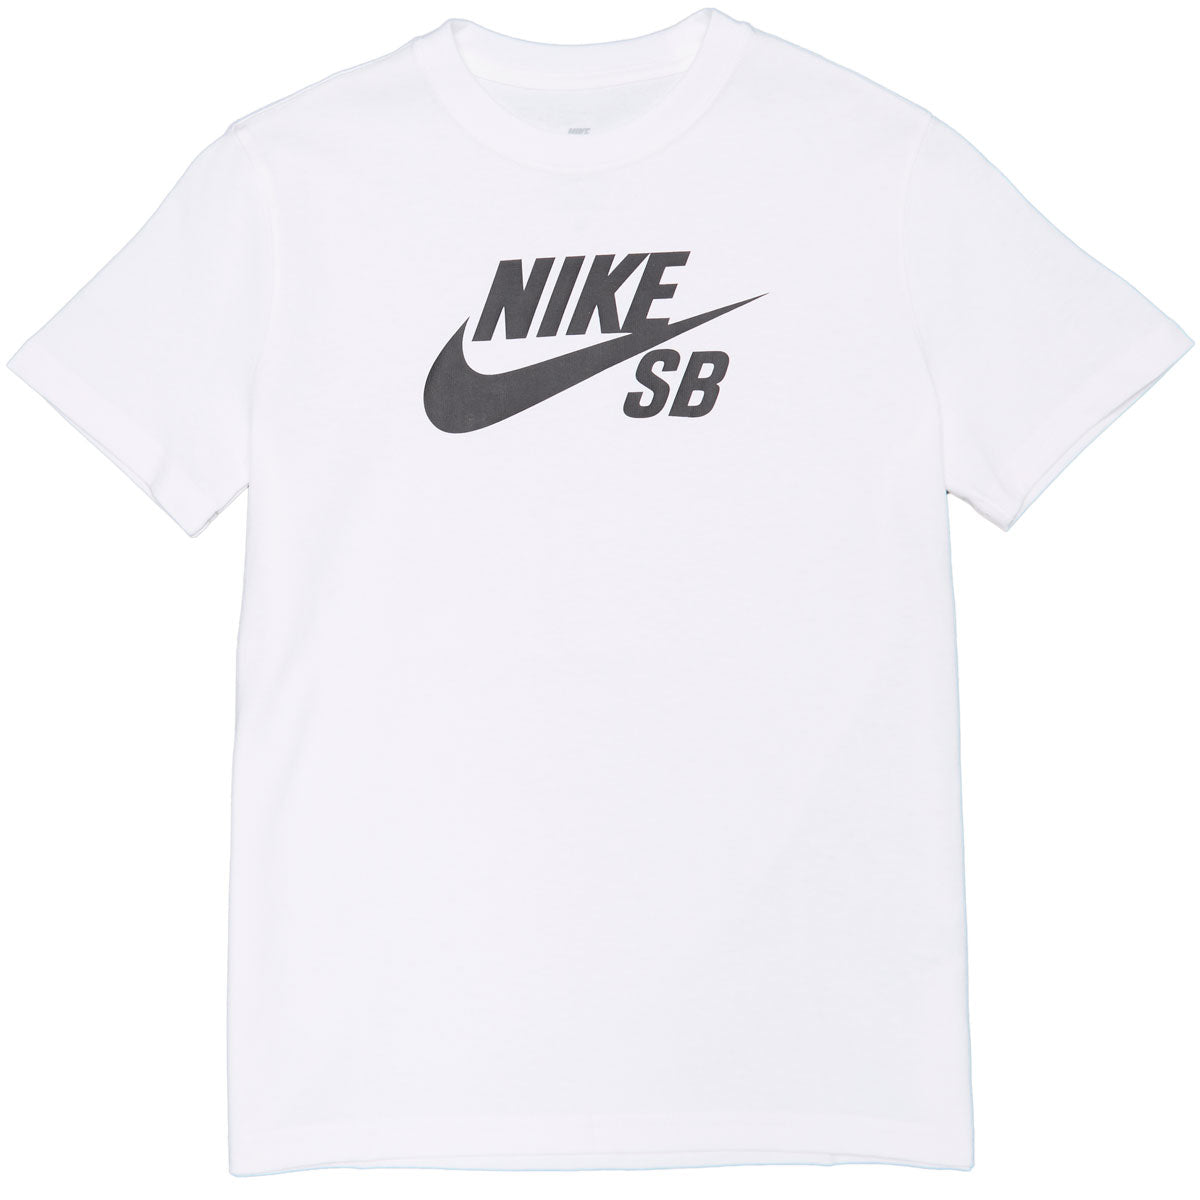 Nike SB Youth Icon T-Shirt - White image 1